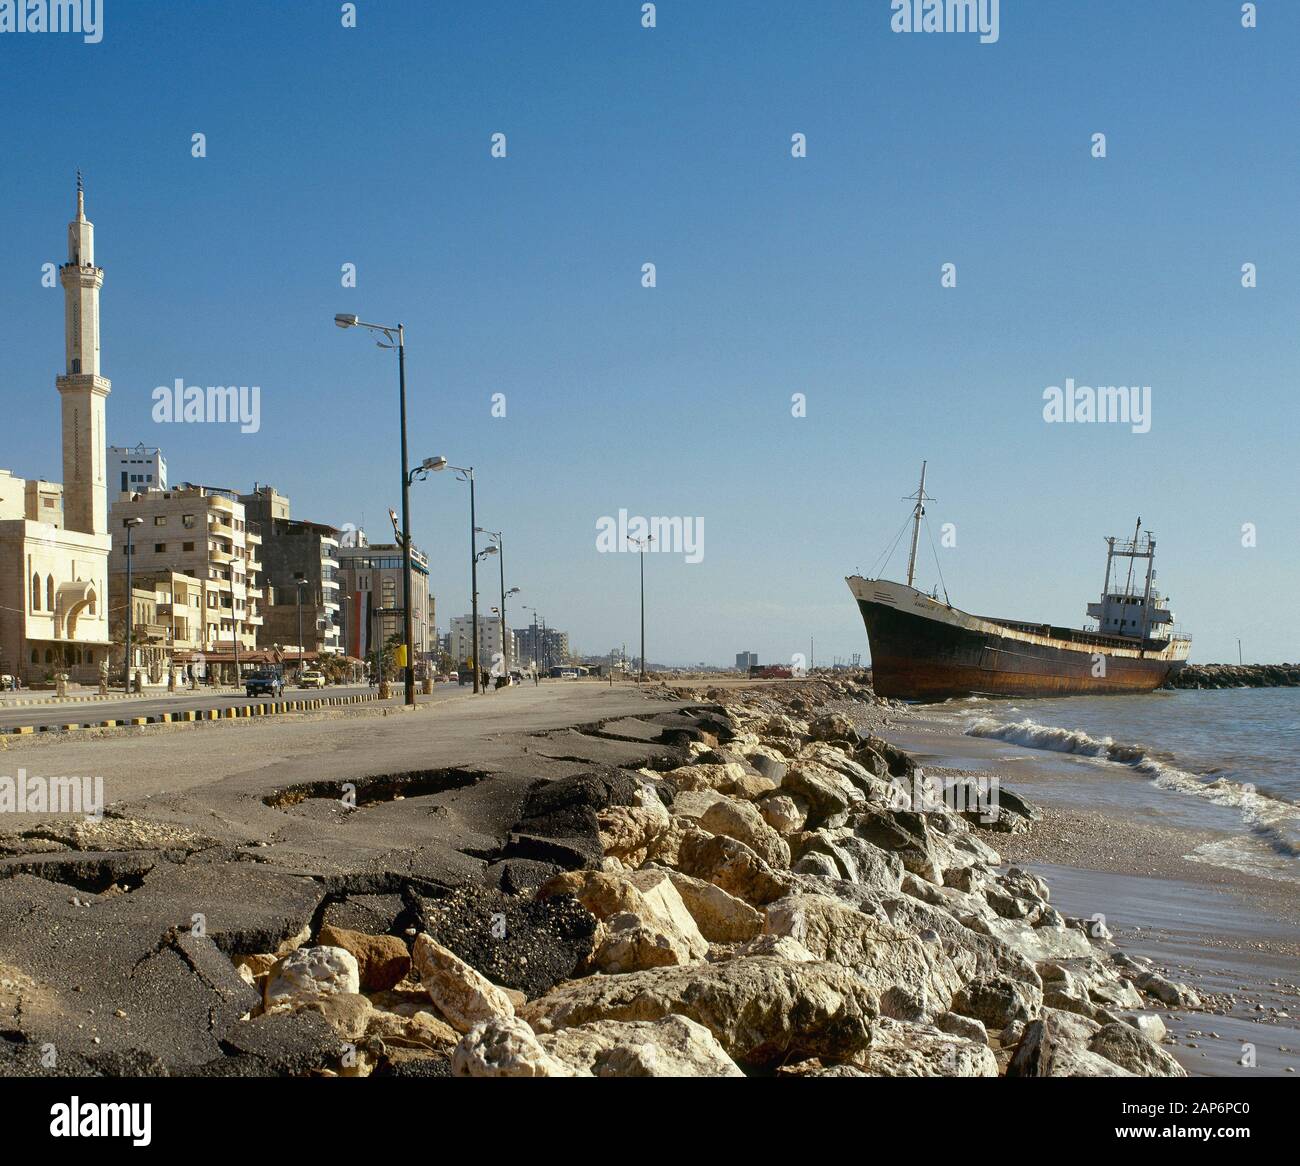 Arabische Republik Syrien Tartous. Blick auf das Meer. Foto vor dem syrischen Bürgerkrieg. Stockfoto